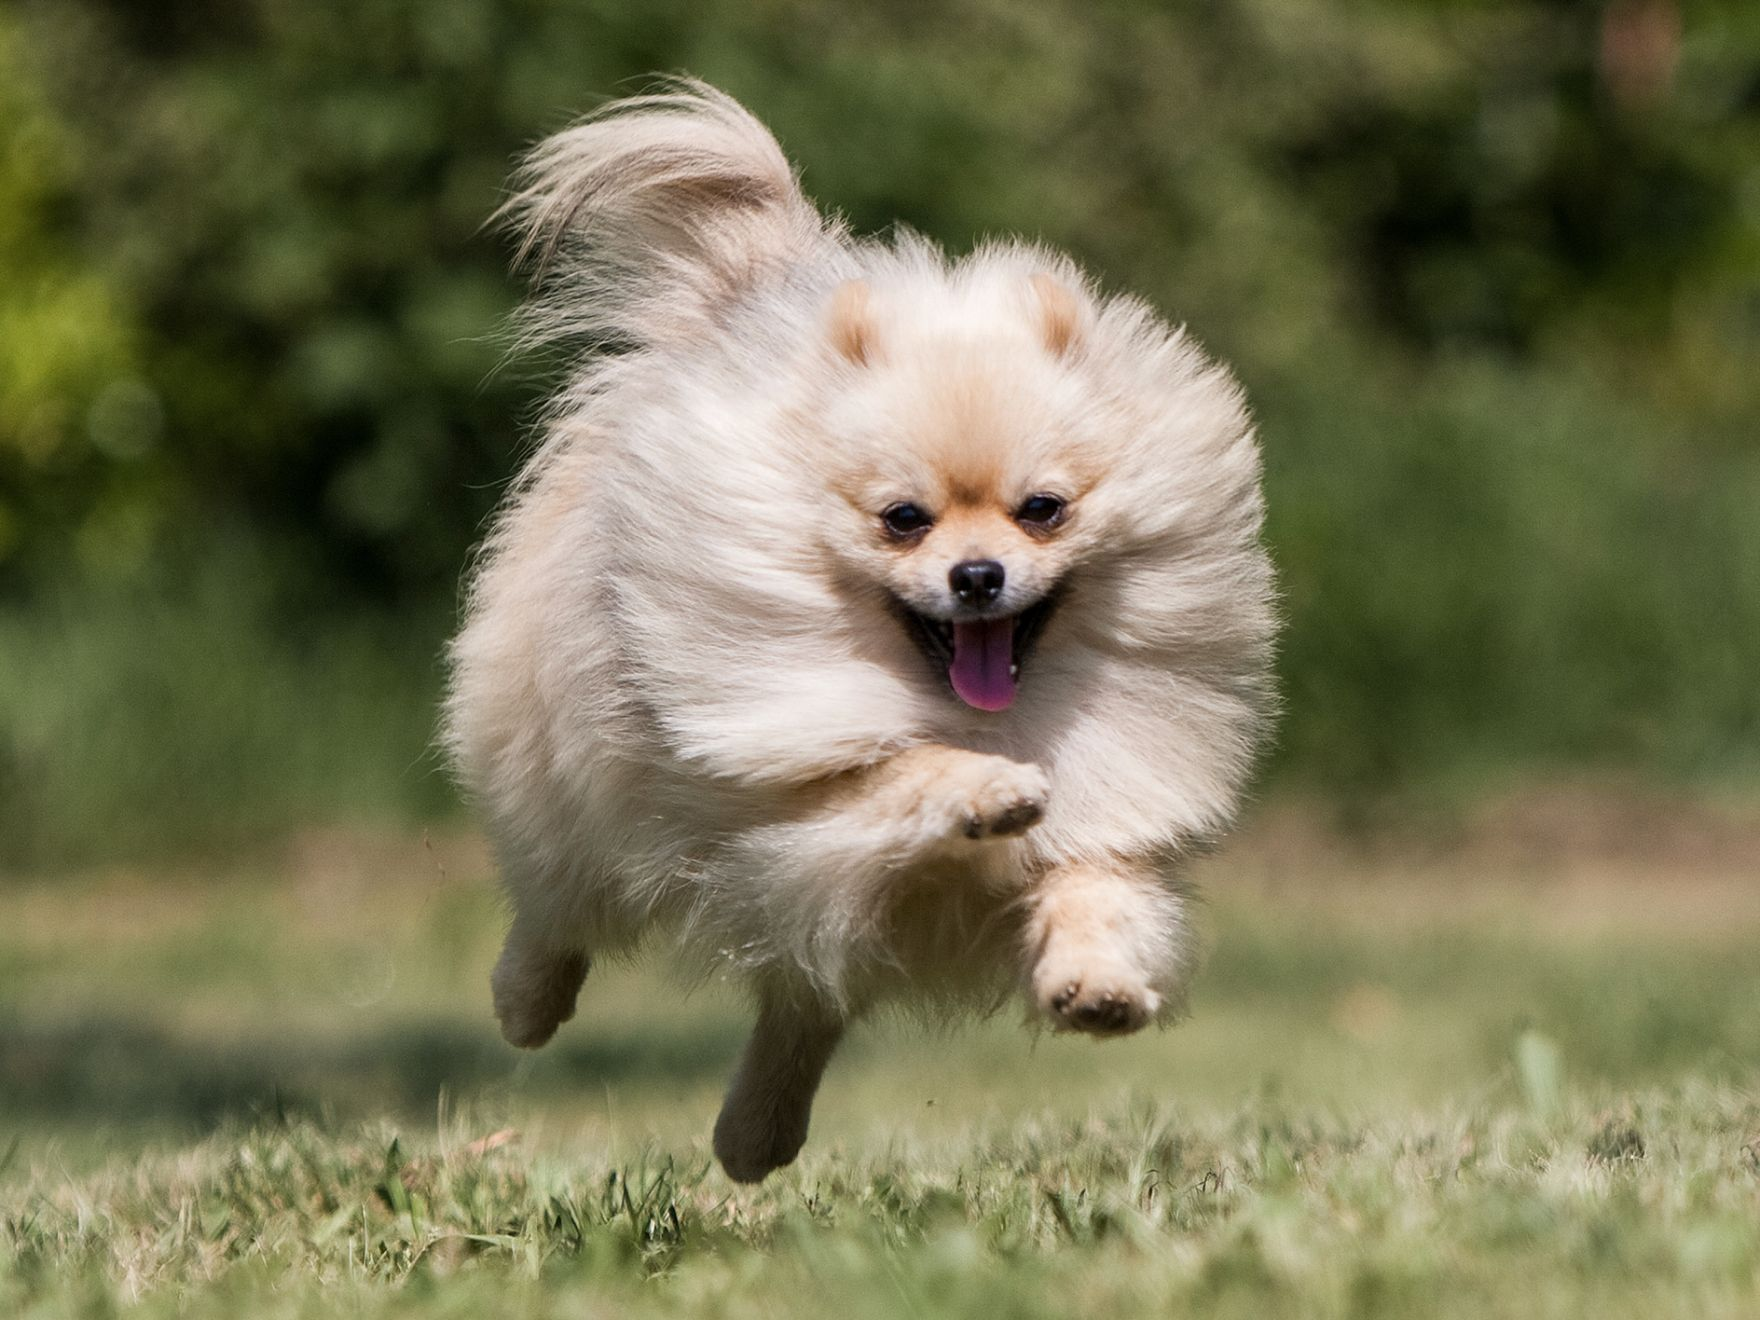 Pomeranian dog running through a field